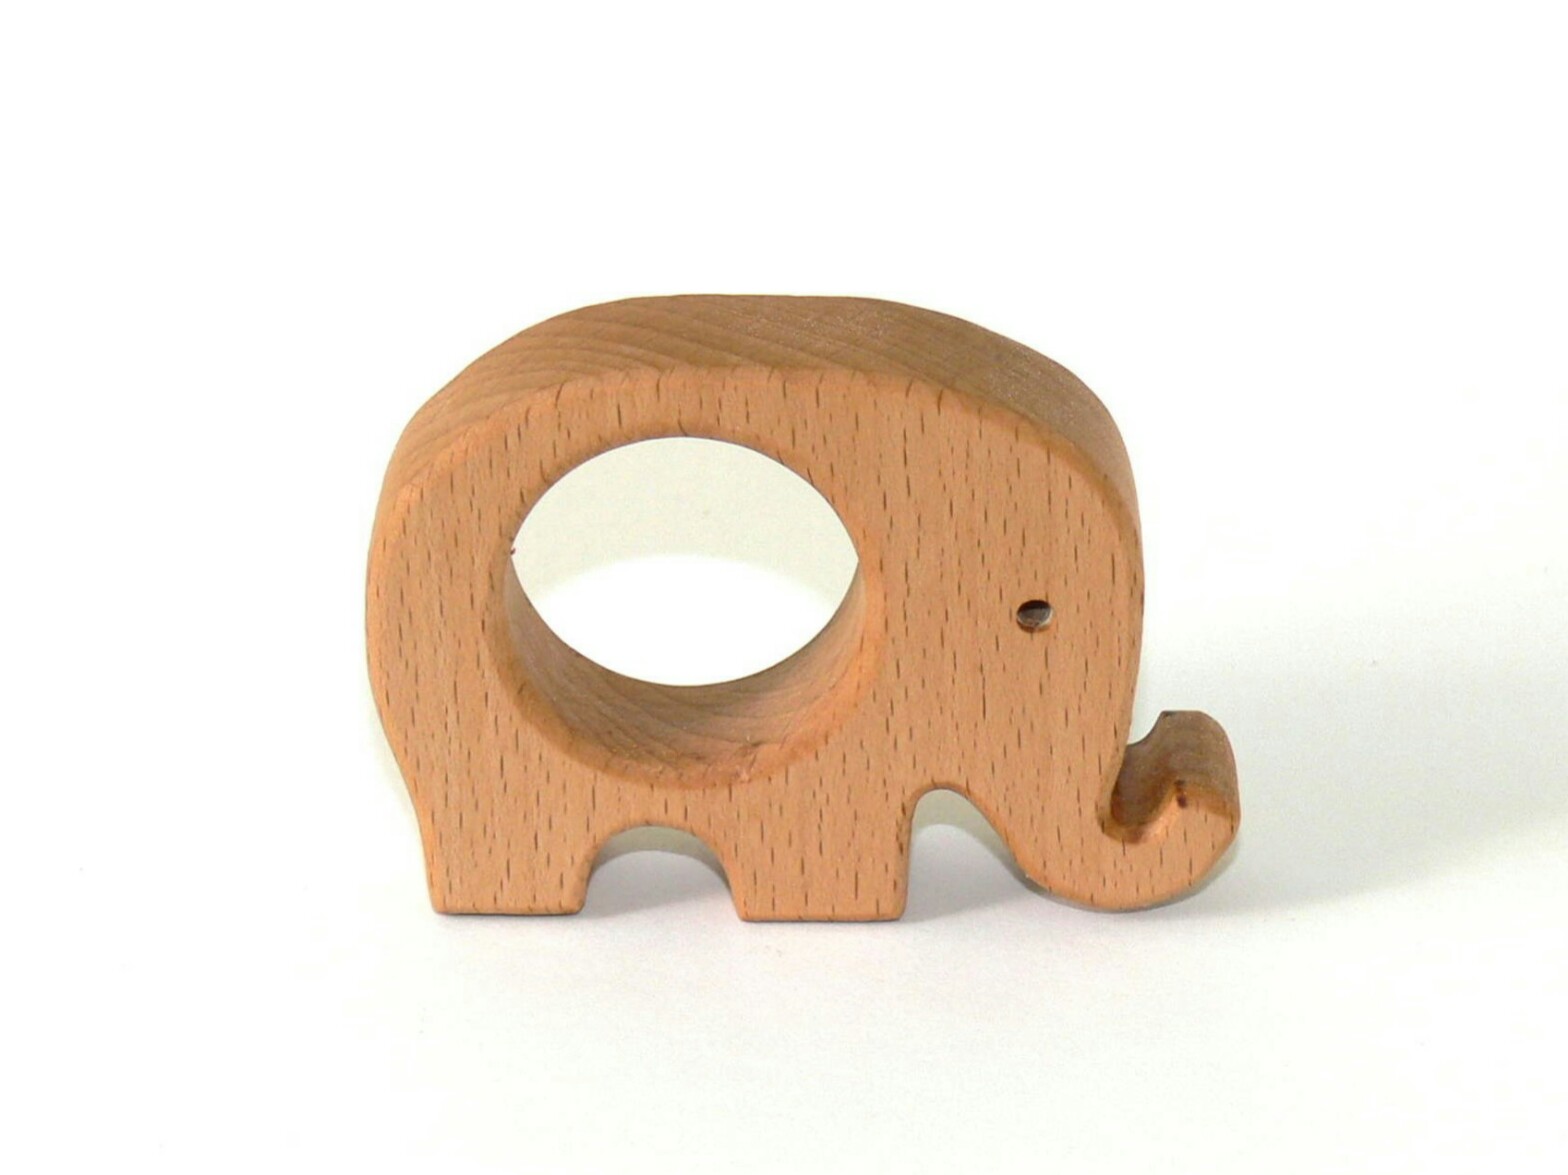 elephant wooden toy